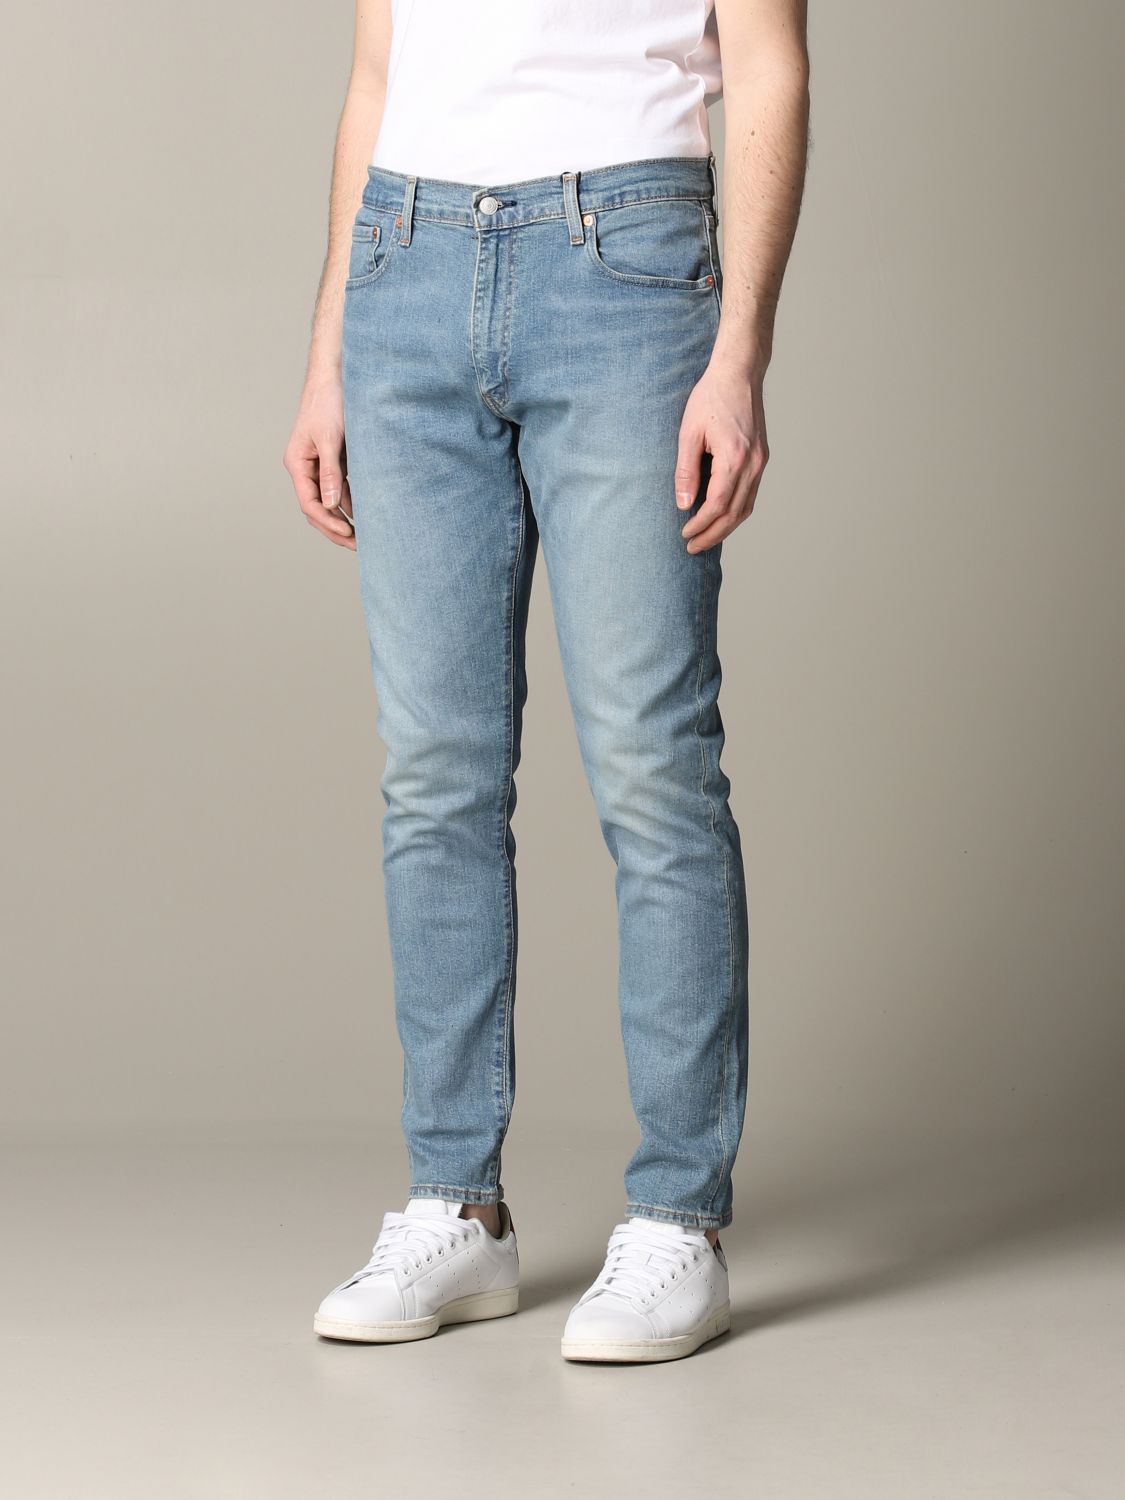 men's levi's jeans on sale